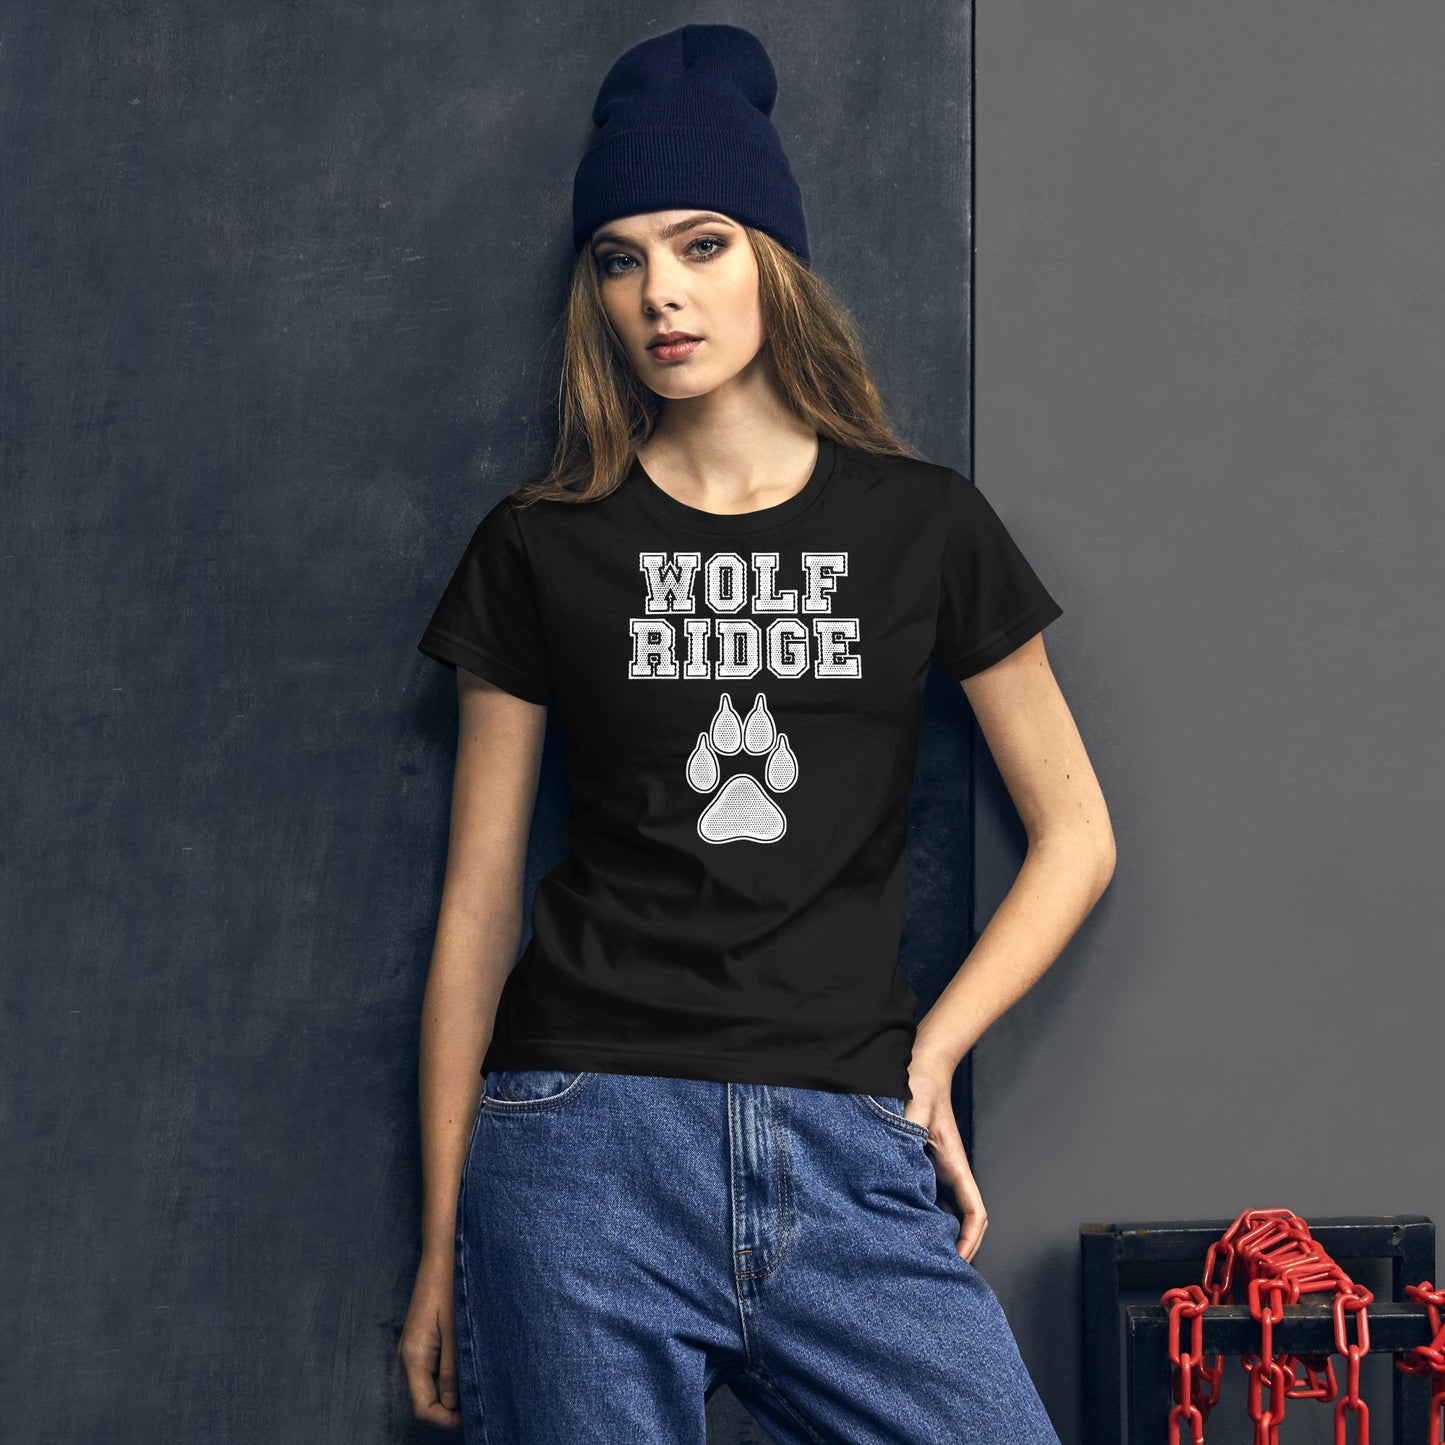 girl with wolf ridge shirt